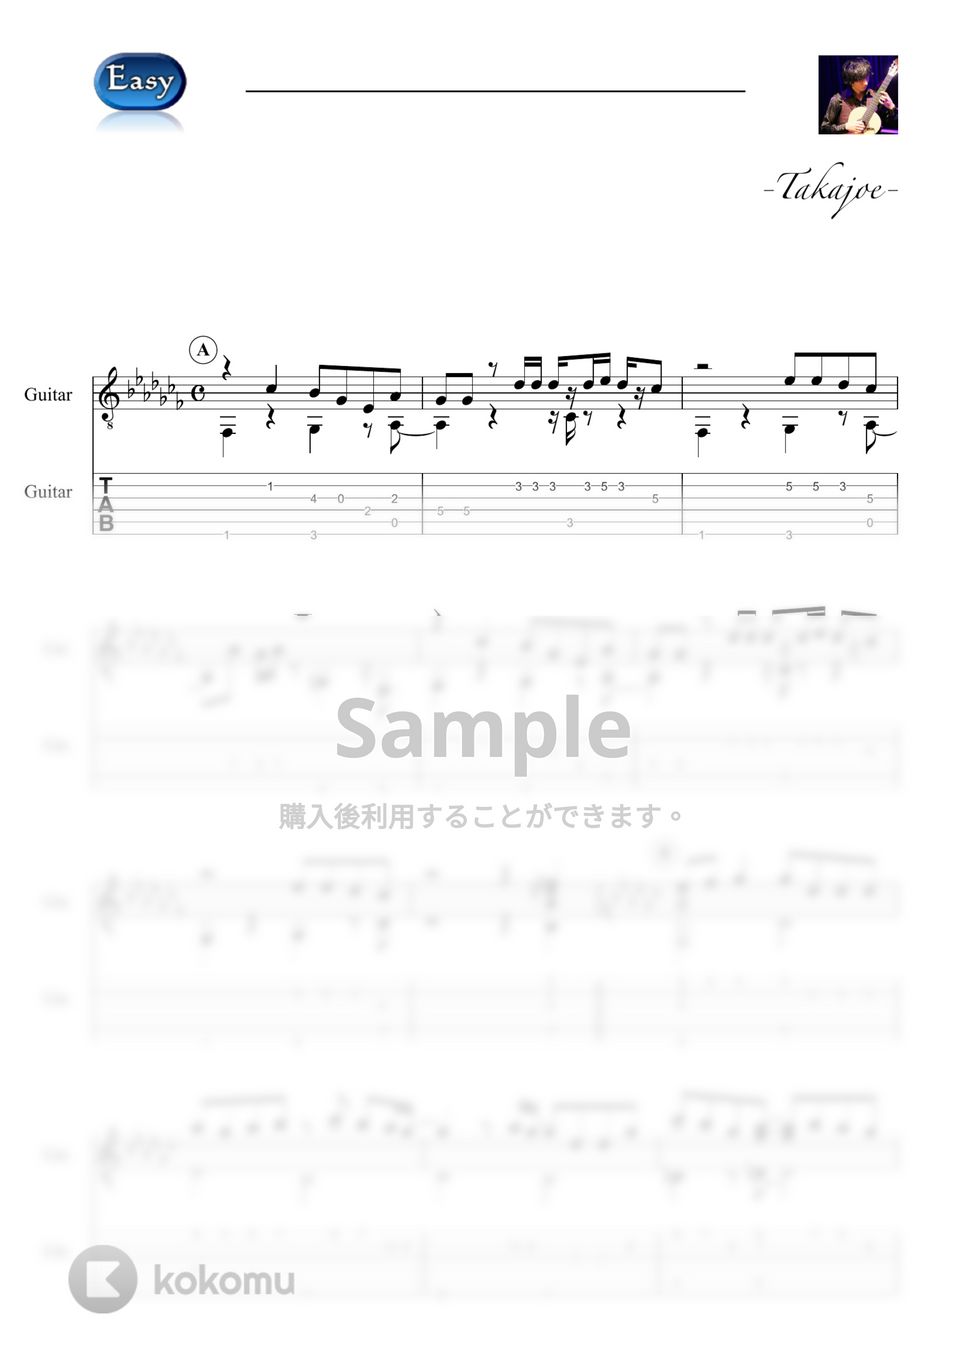 ヨルシカ - 雨とカプチーノ (Easy&Short Ver.) by 鷹城-Takajoe-